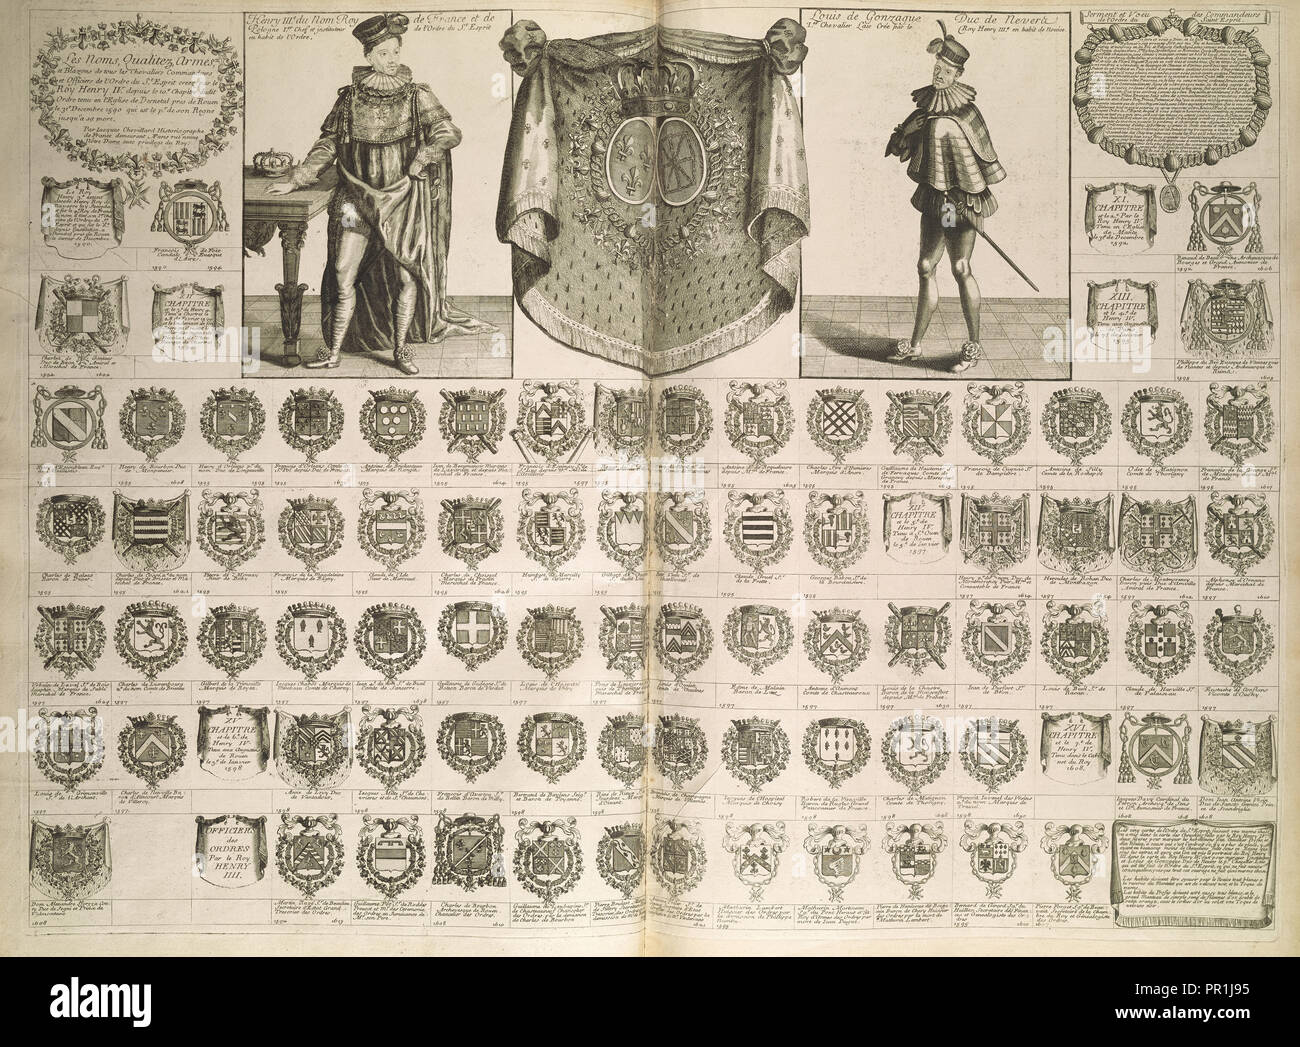 Le noms qualitéz armes et blasons, Cartes de blason, de chronologie, et d'histoire, Chevillard, J., Jacques, 1695-1724 Stock Photo